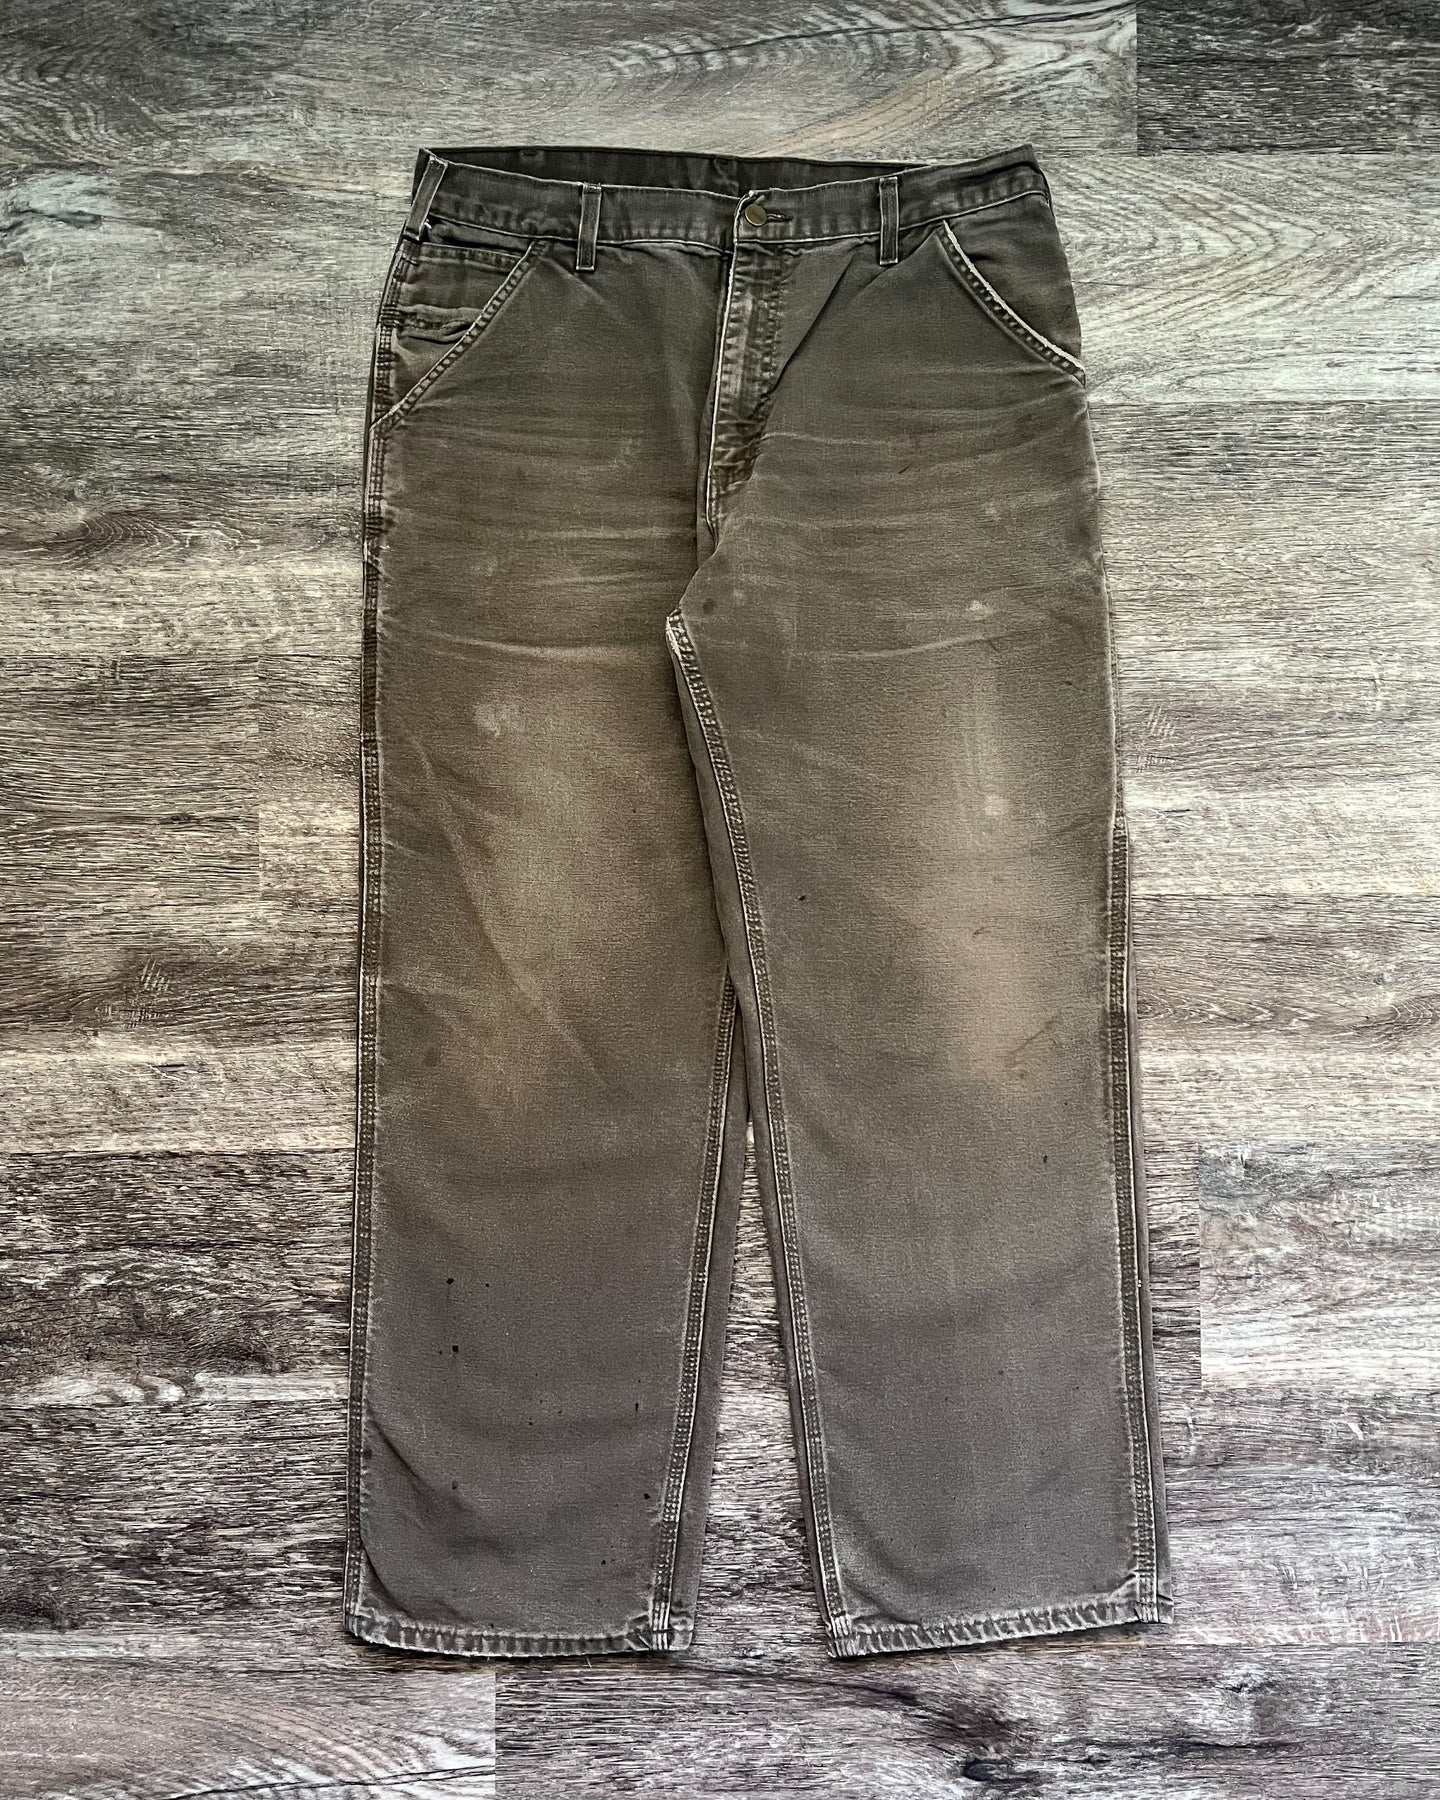 1990s Carhartt Well Worn Moss Green Carpenter Pants - Size 34 x 31